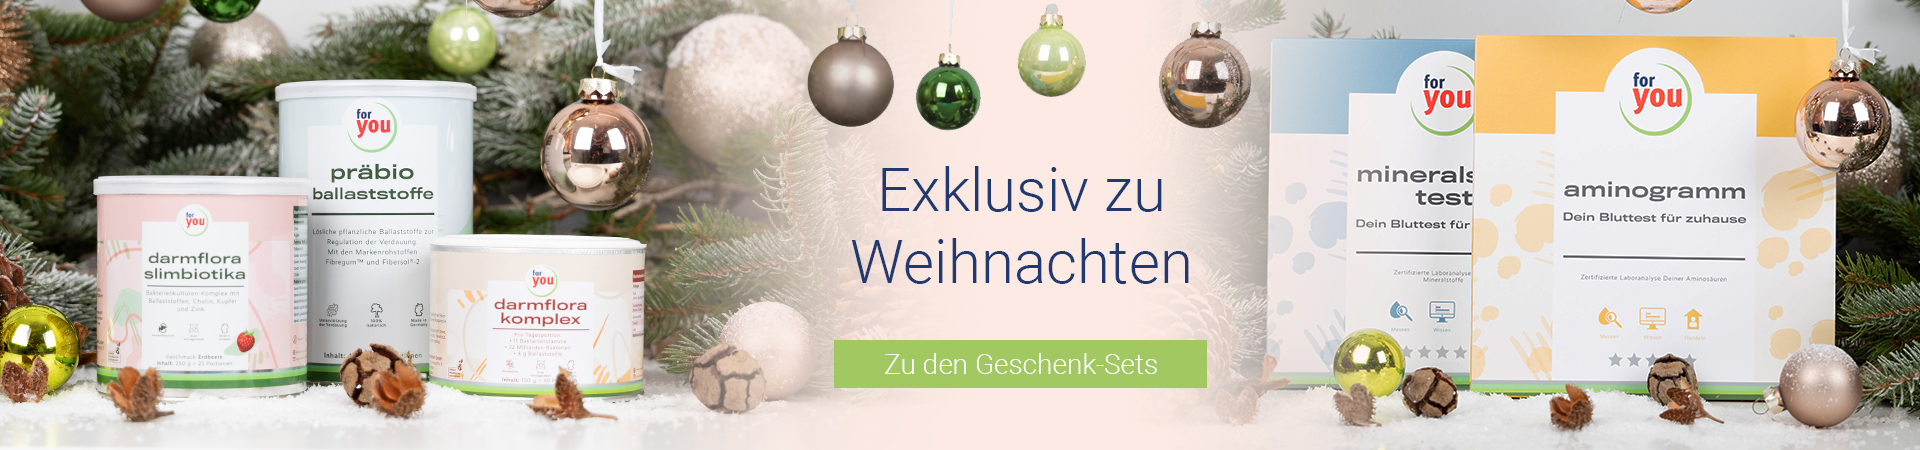 geschenk-set-weihnachten-for-you-selbsttest